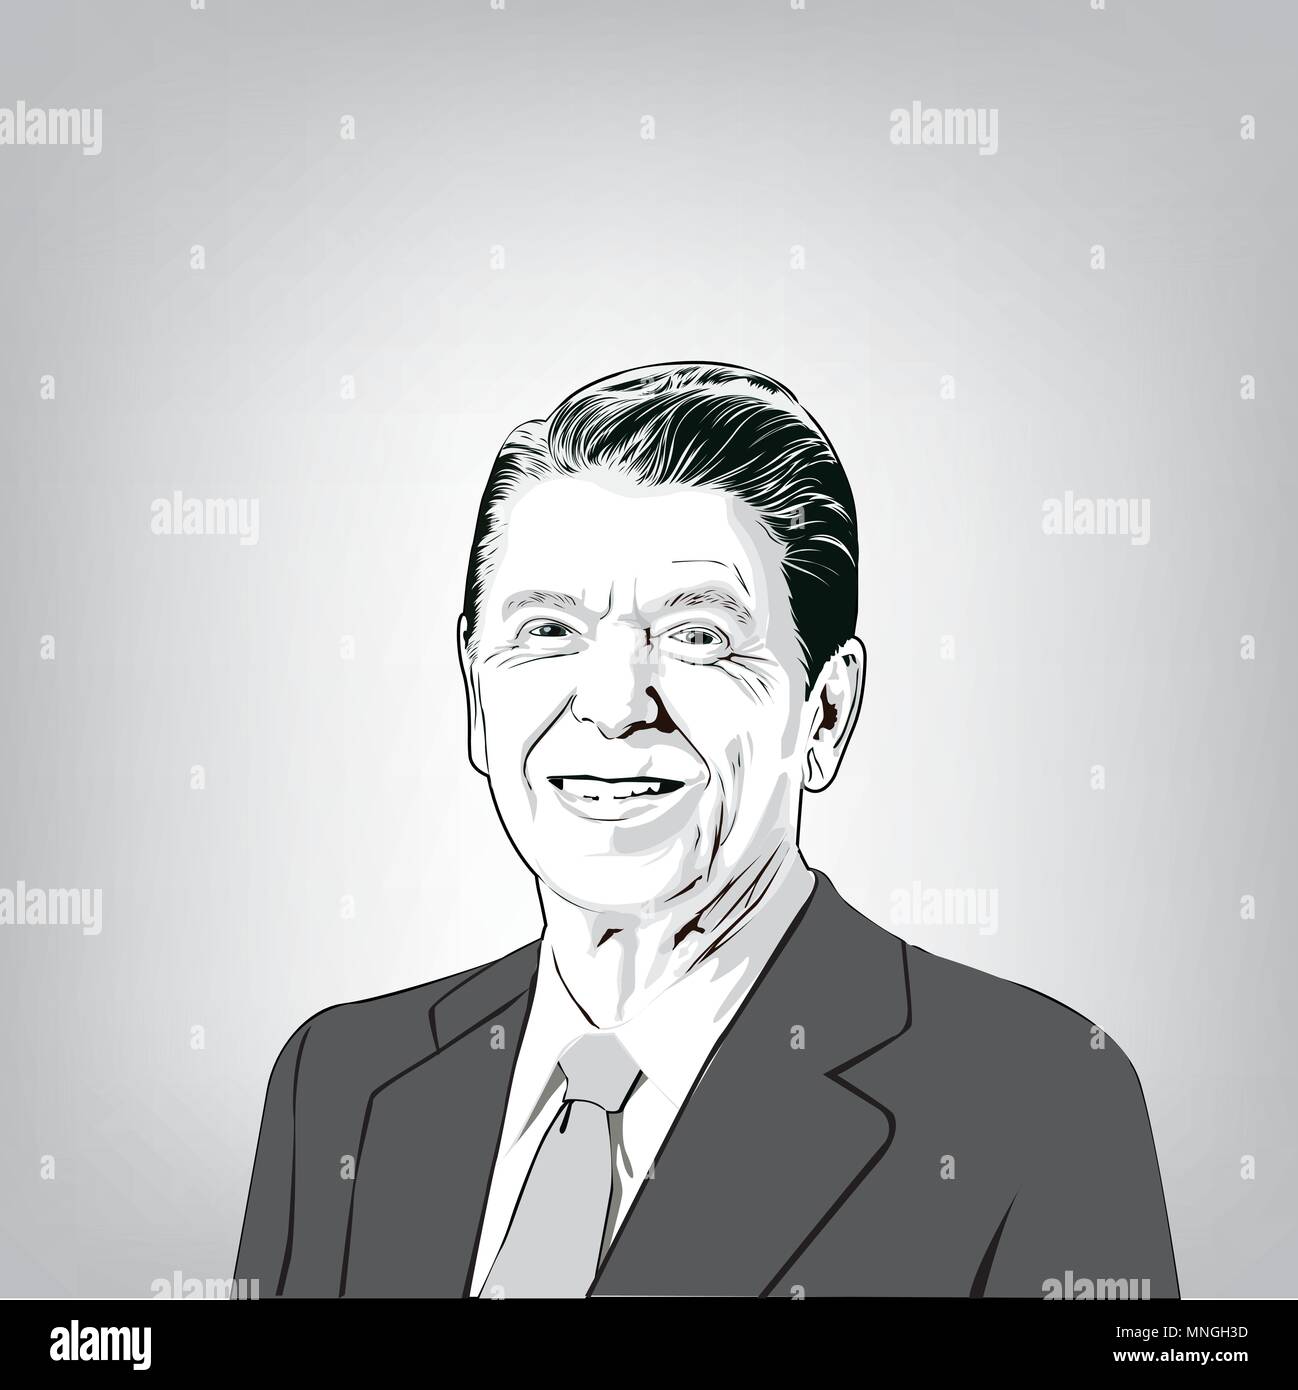 Ronald Wilson Reagan(1911-2004), 40e président des États-Unis,image vecteur de Ronald Reagan. Illustration de Vecteur